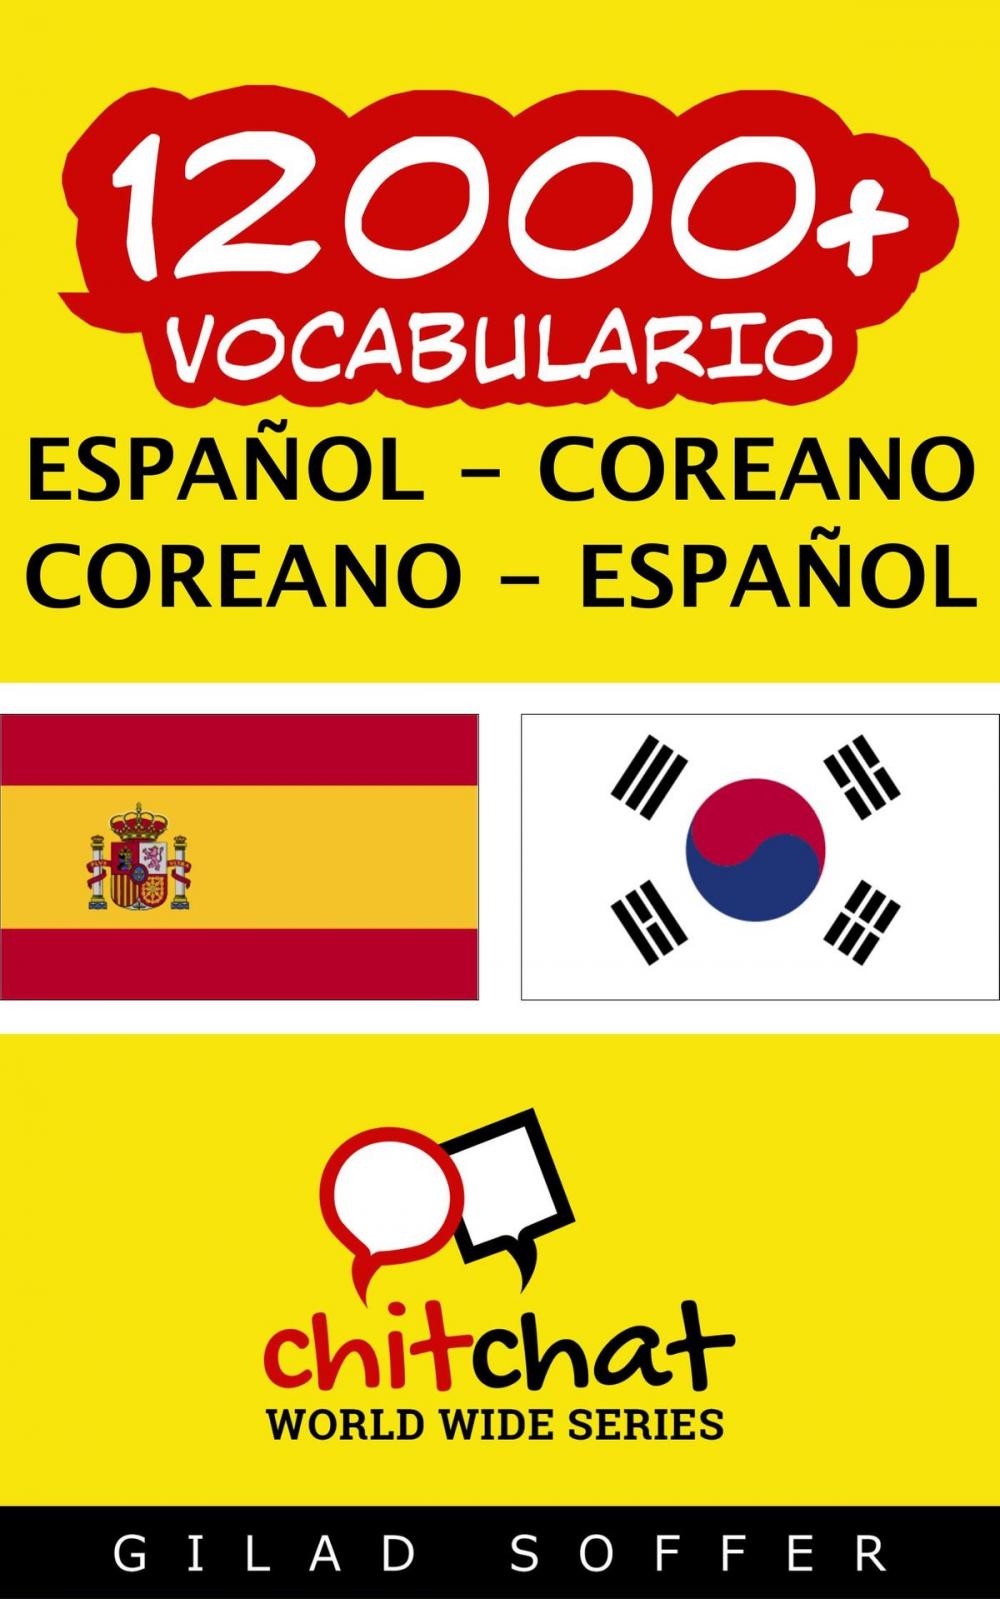 Big bigCover of 12000+ vocabulario español - coreano